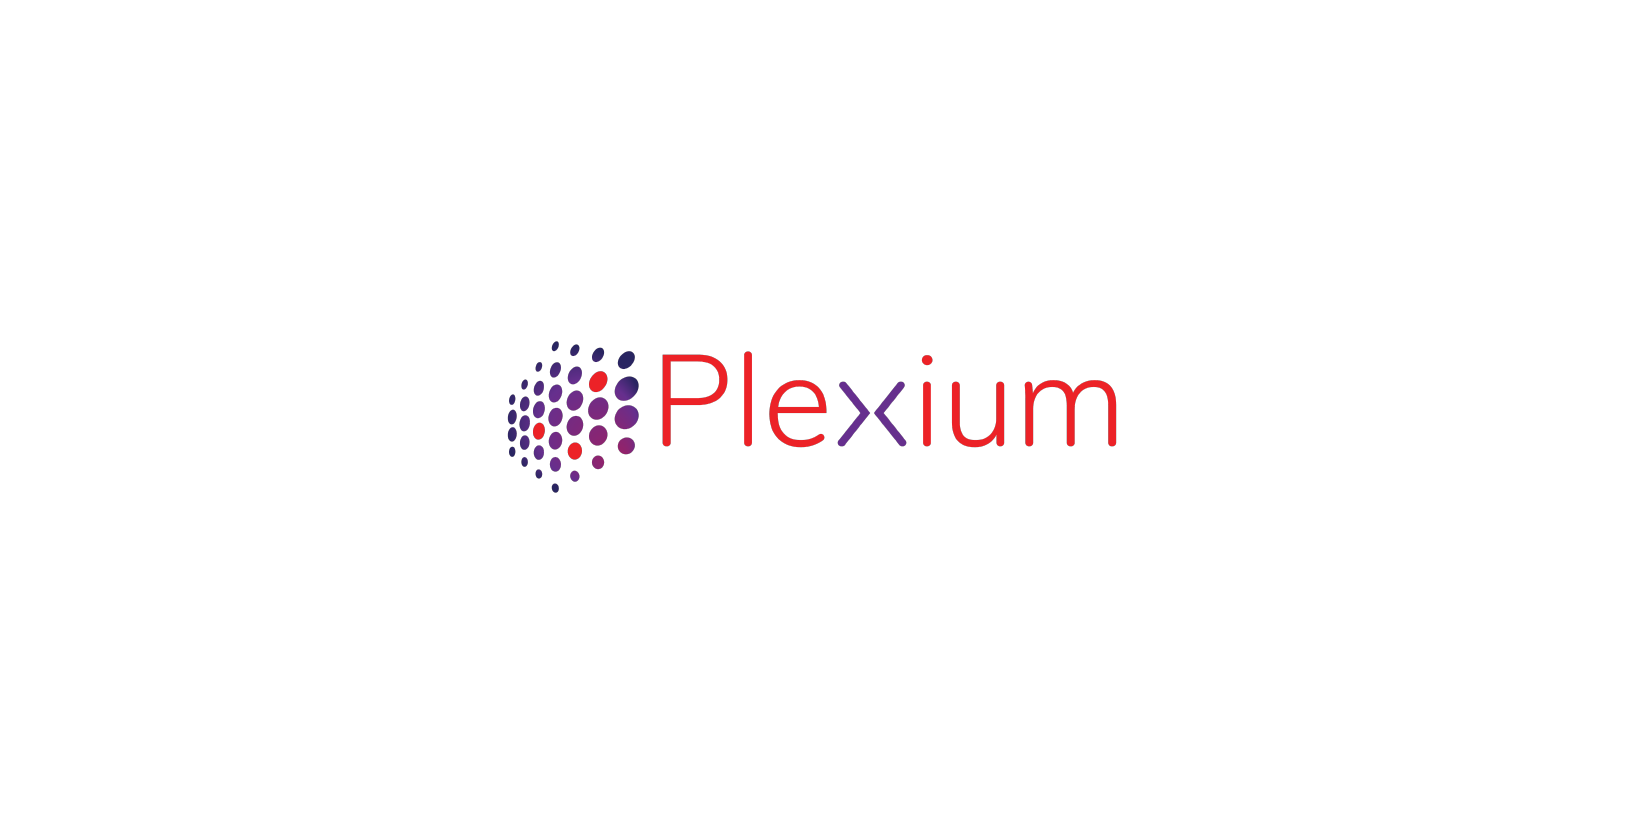 Vision Fund investment portfolio company Plexium's logo